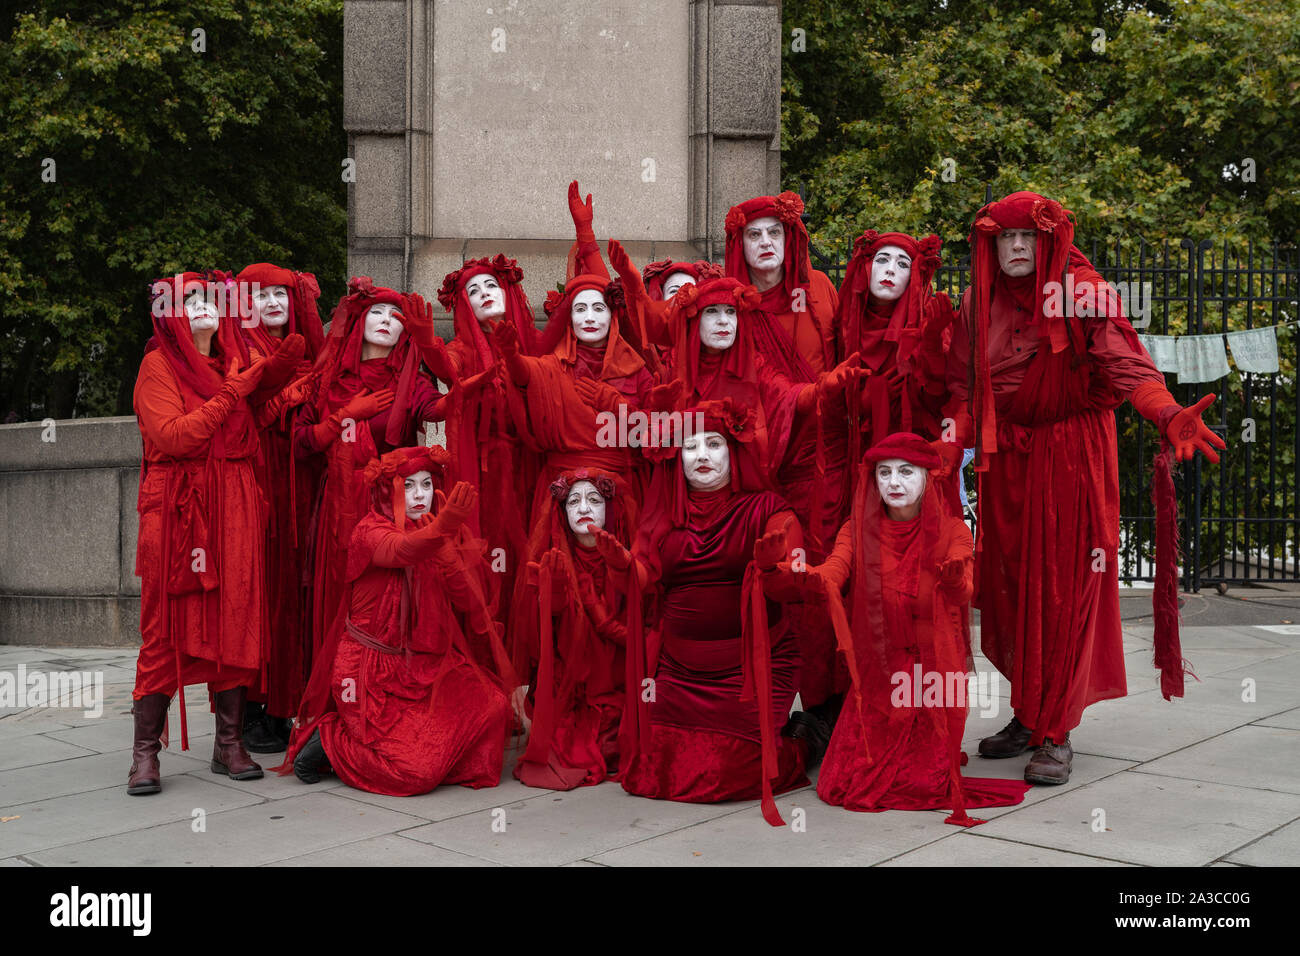 Extinción Rebellion 'Rojo' de la Brigada rebelde unirse al cambio climático activistas en Lambeth Bridge luciendo sus marcas trajes rojo sangre. Londres, Reino Unido. Foto de stock